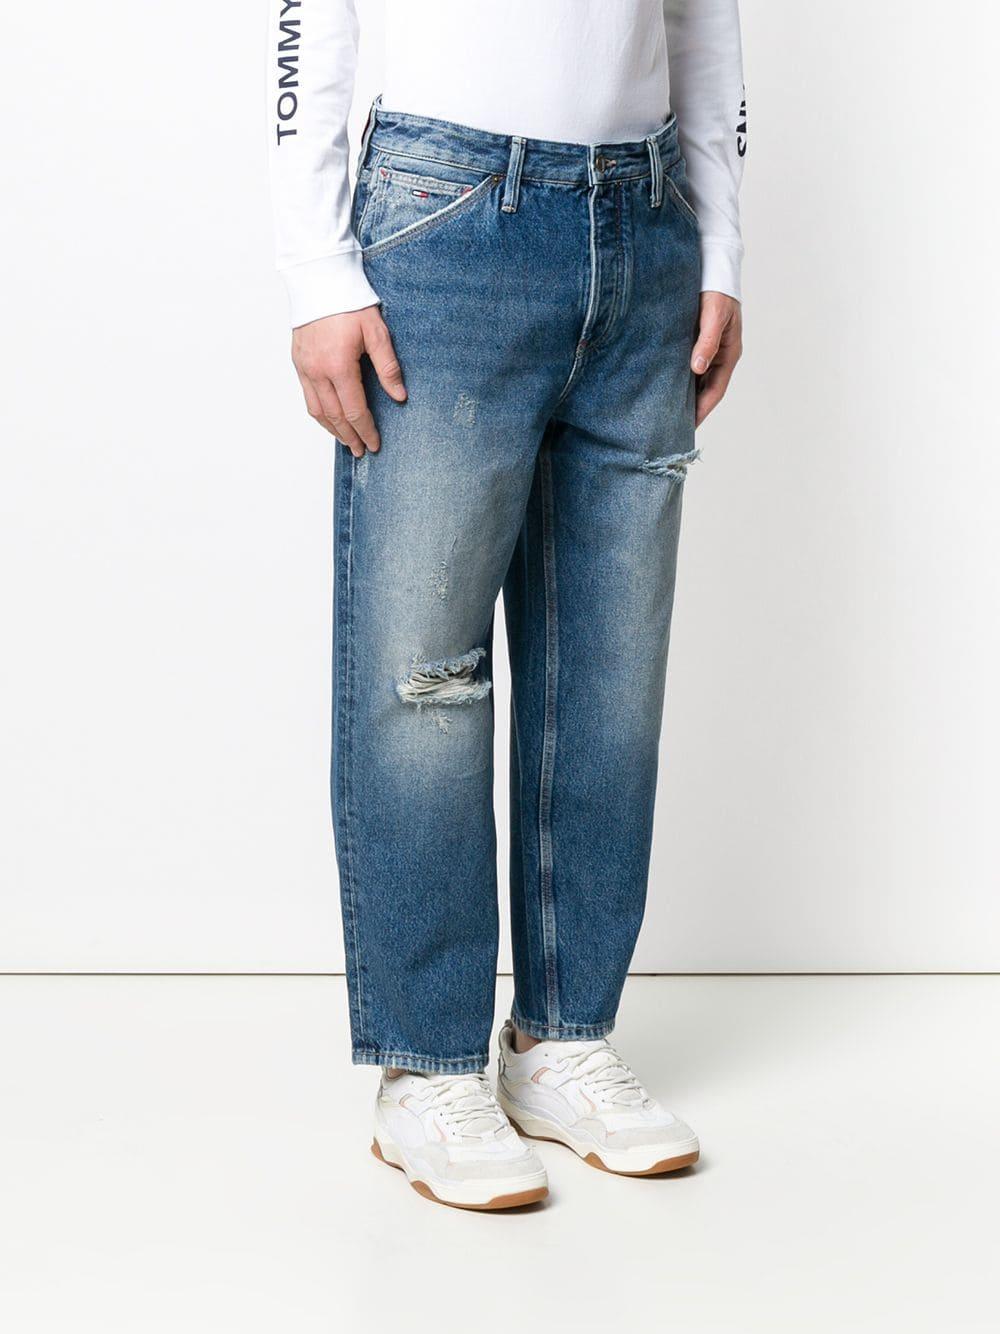 Tommy Hilfiger Denim Baggy Worker Jeans in Blue for Men - Lyst